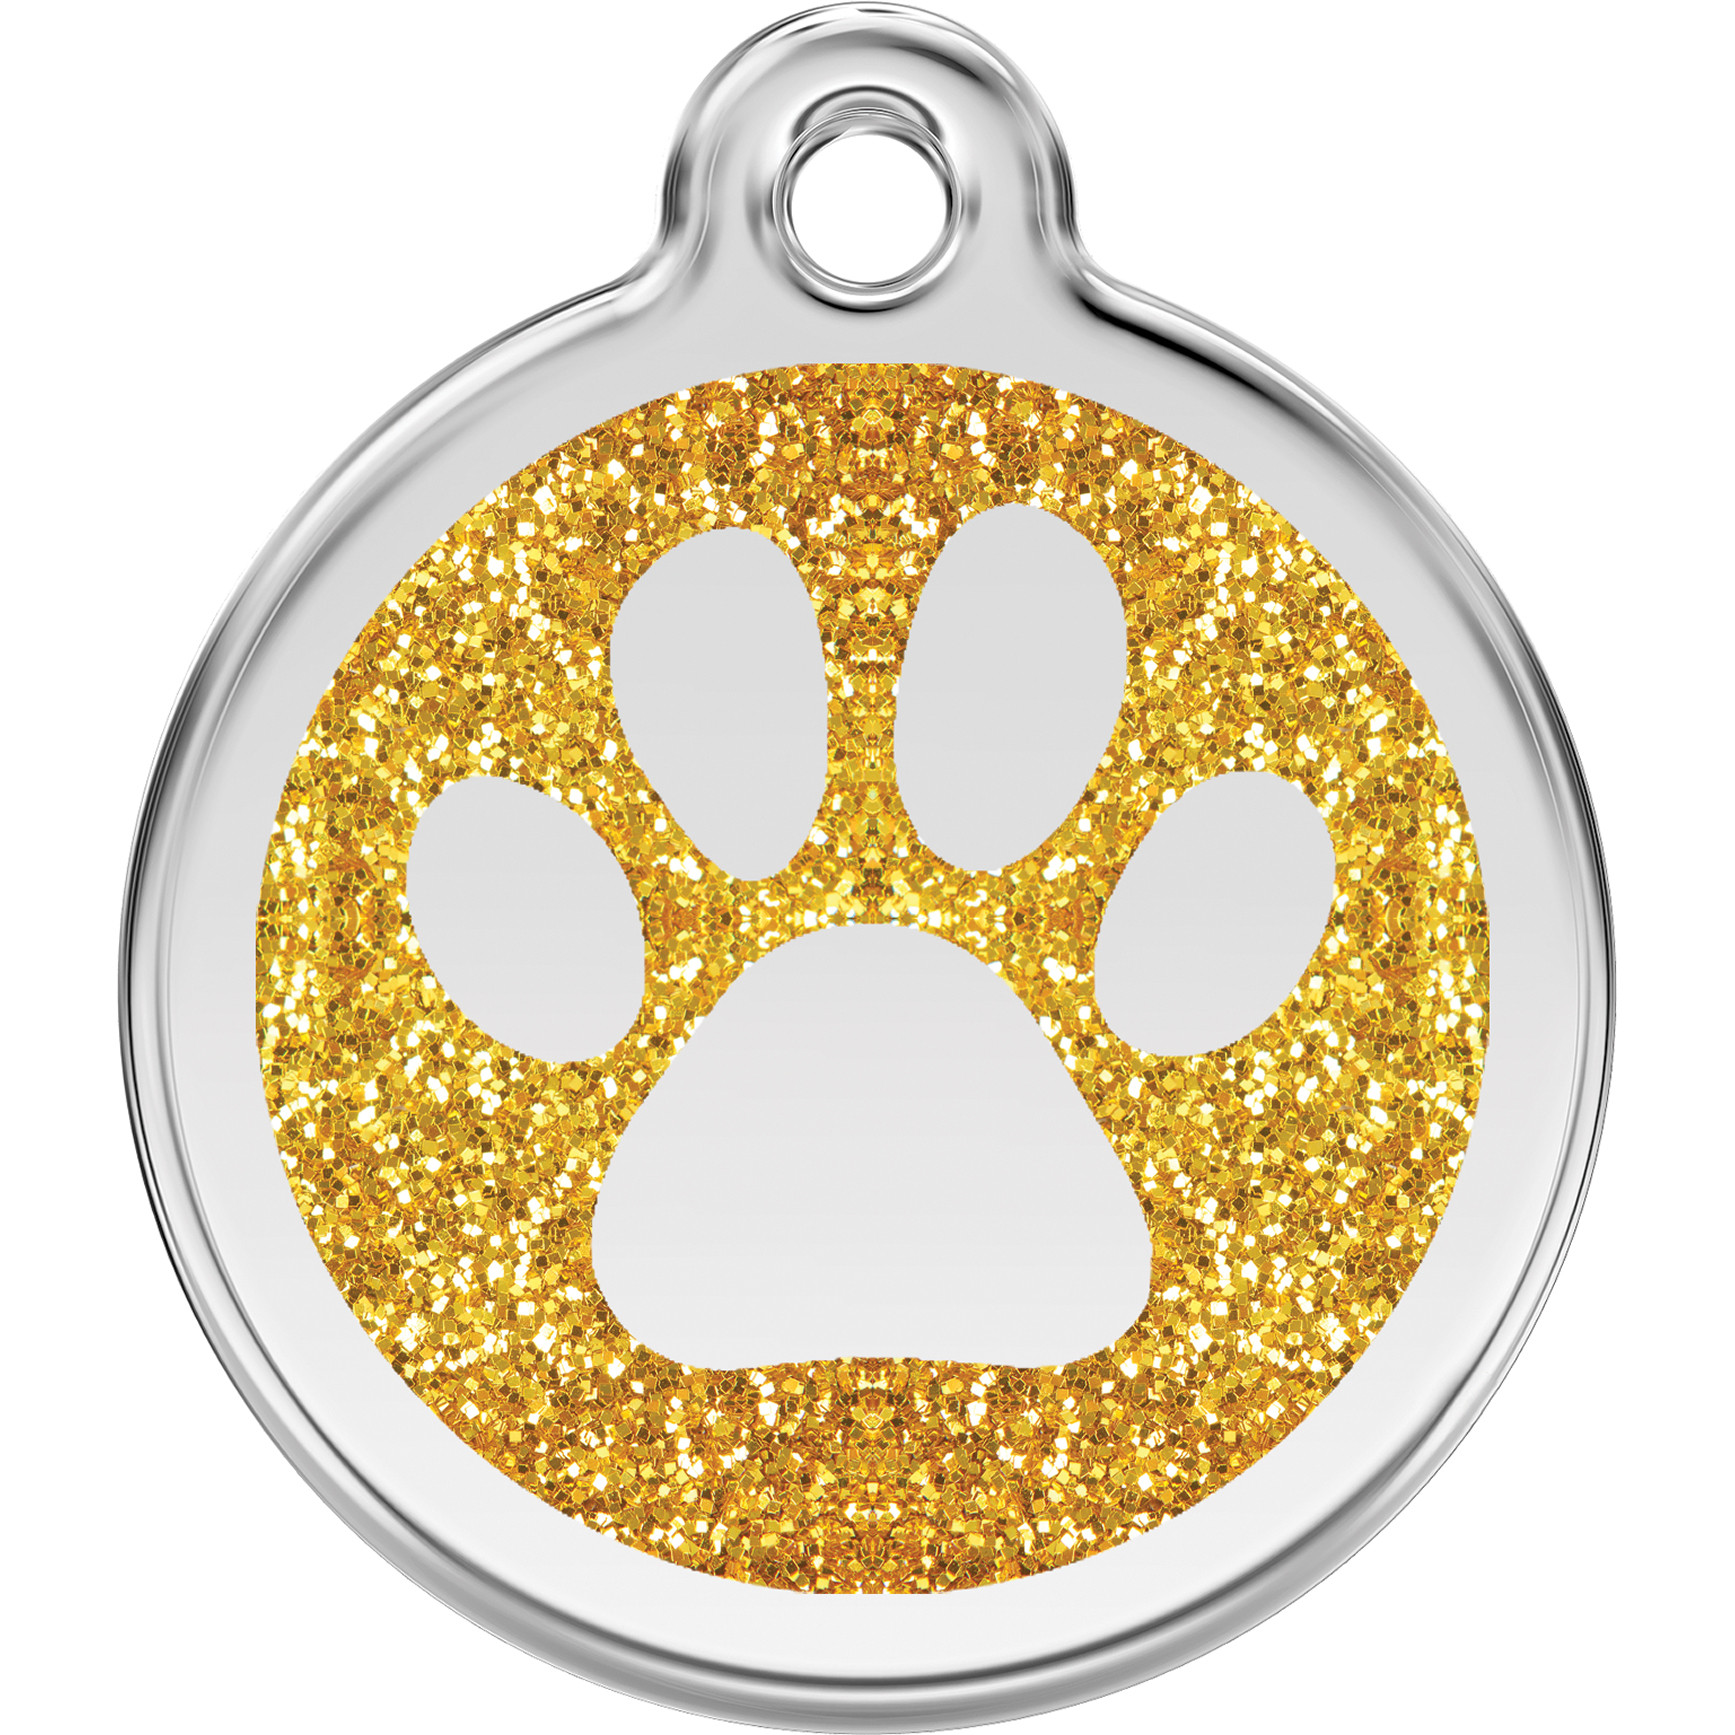 Médaille pour chien, identification chien